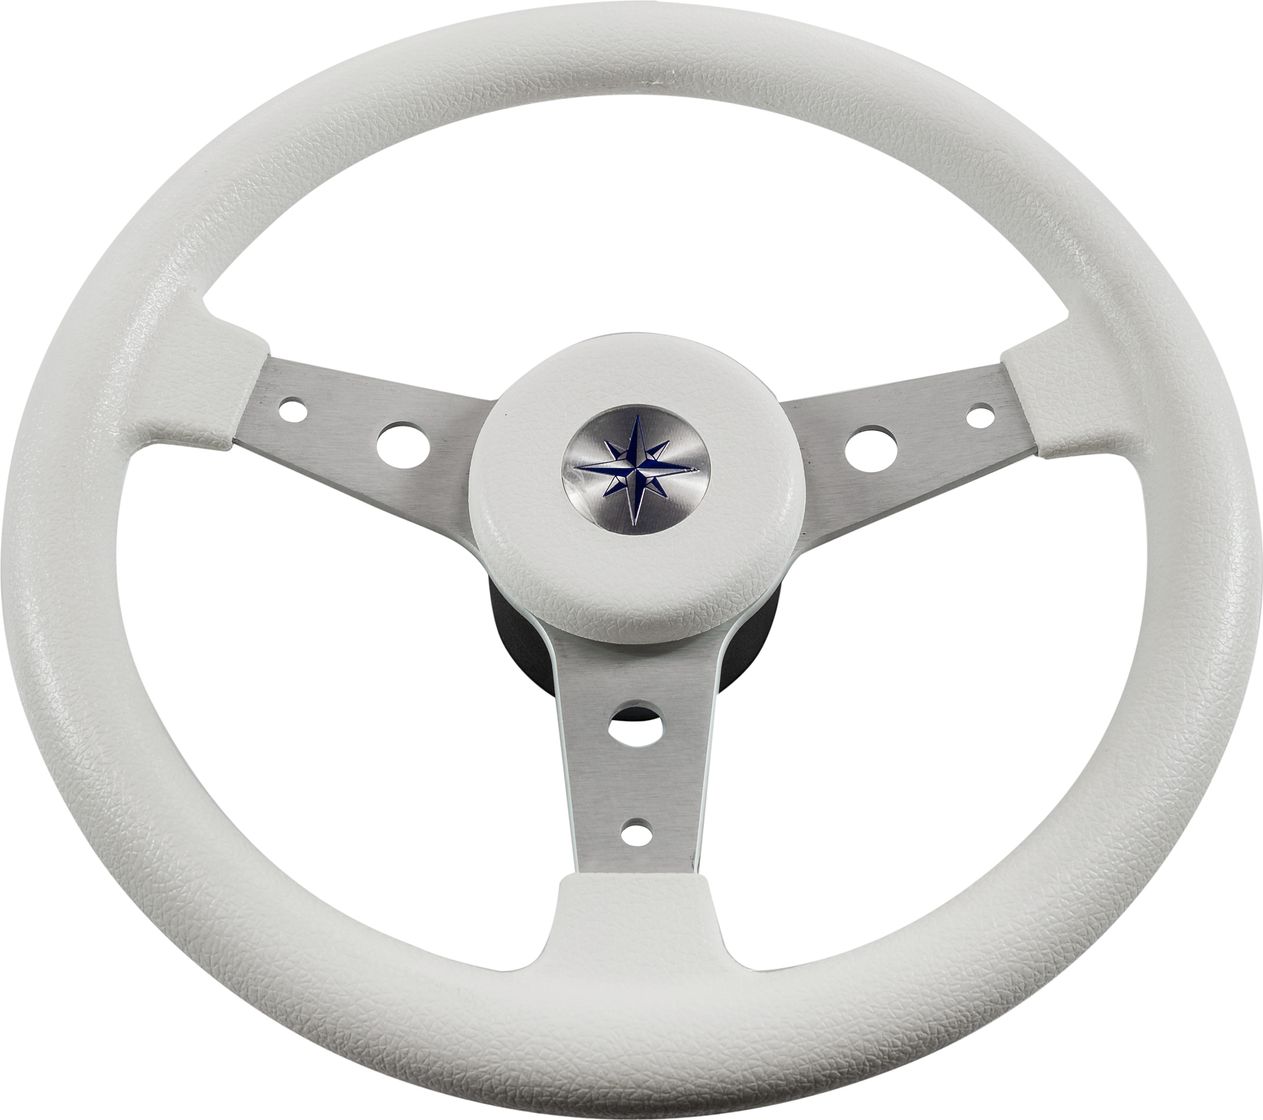 Рулевое колесо DELFINO обод белый,спицы серебряные д. 340 мм VN70401-08 рулевое колесо leader plast белый обод серебряные спицы д 330 мм vn8330 08